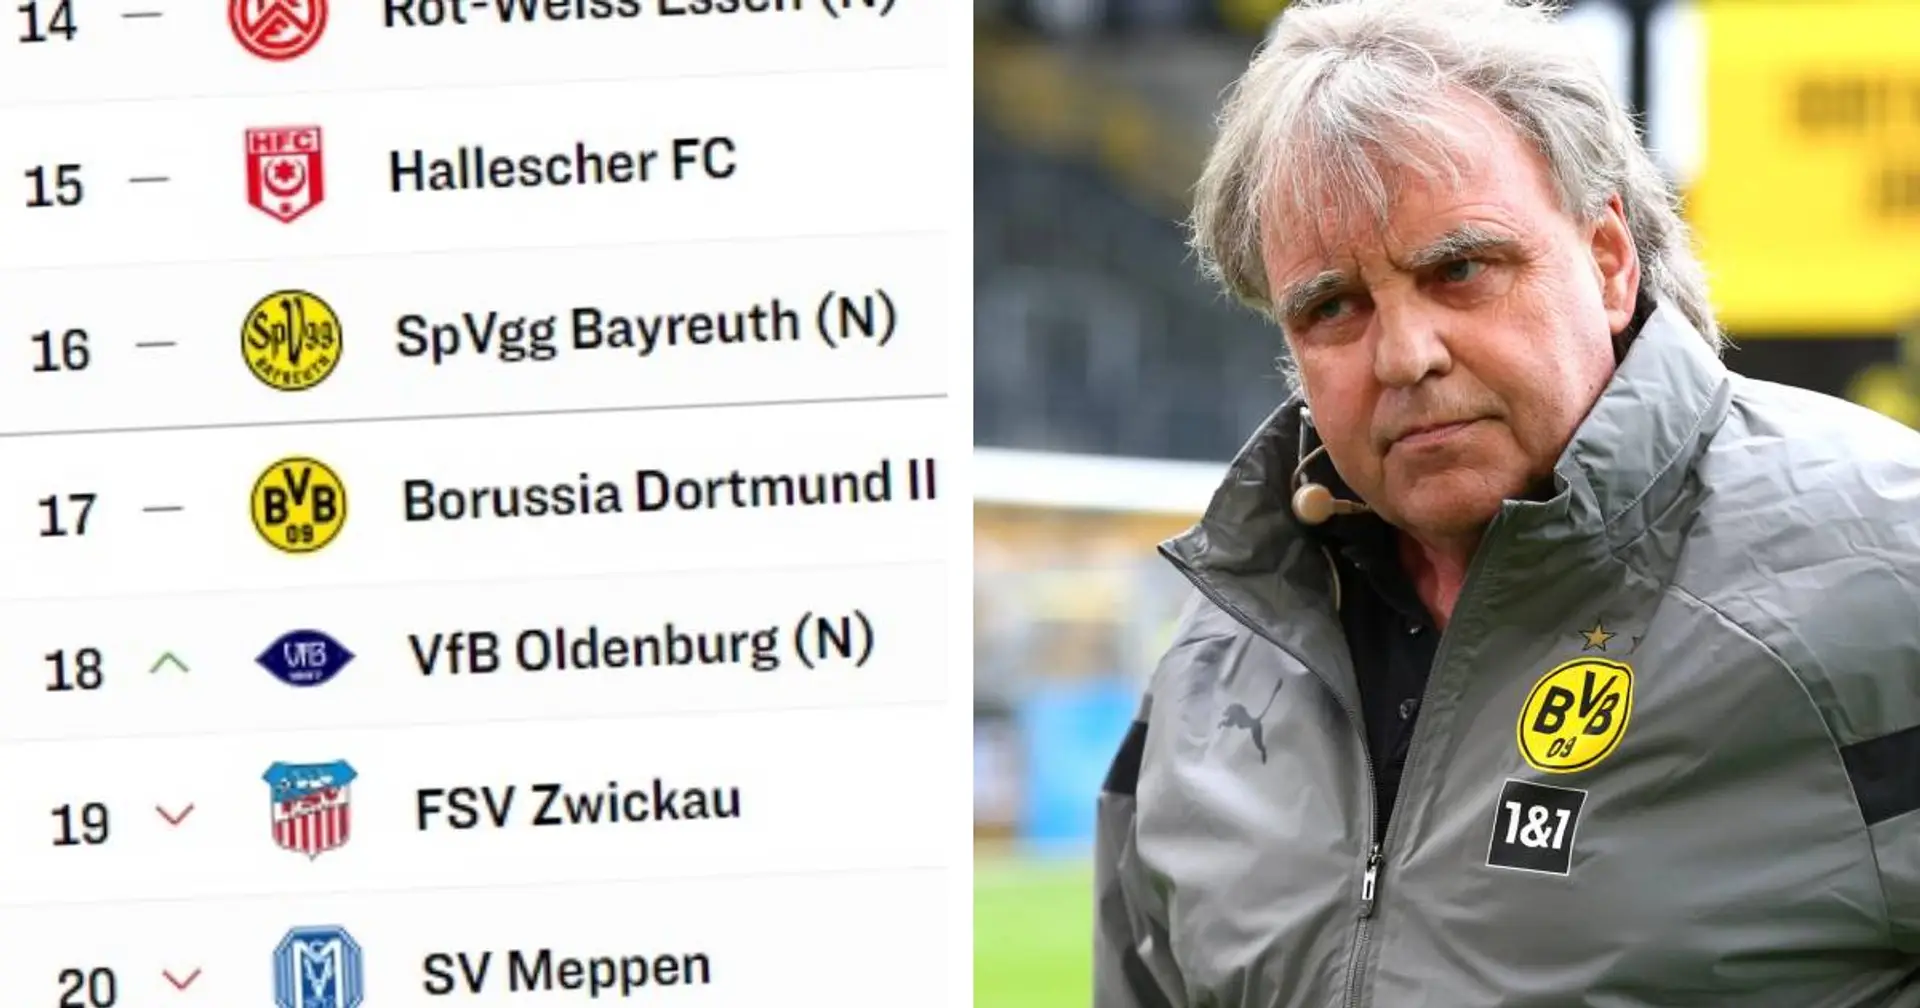 "Immer im Stress": BVB-U23-Sportchef Preuß schlägt Alarm - das Team ist in der Abstiegszone